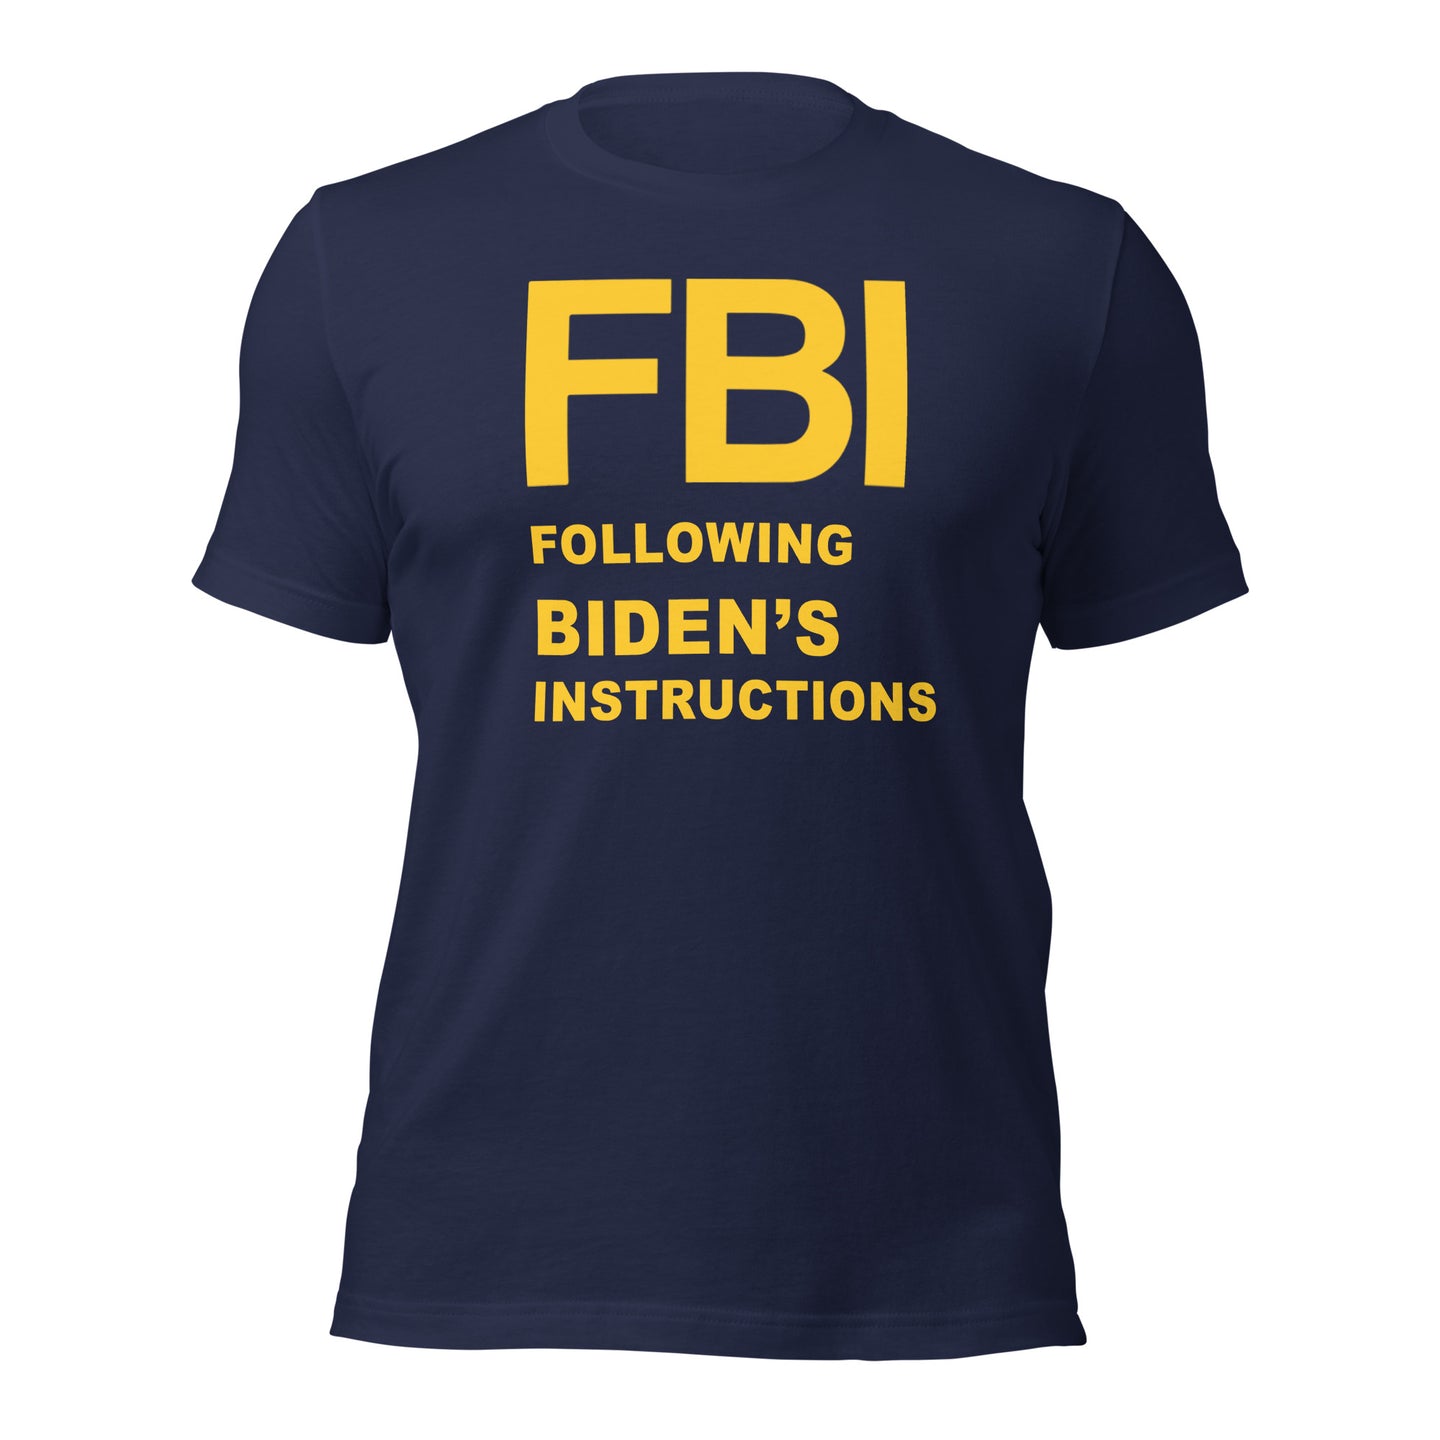 Camiseta del FBI siguiendo las instrucciones de Bidens